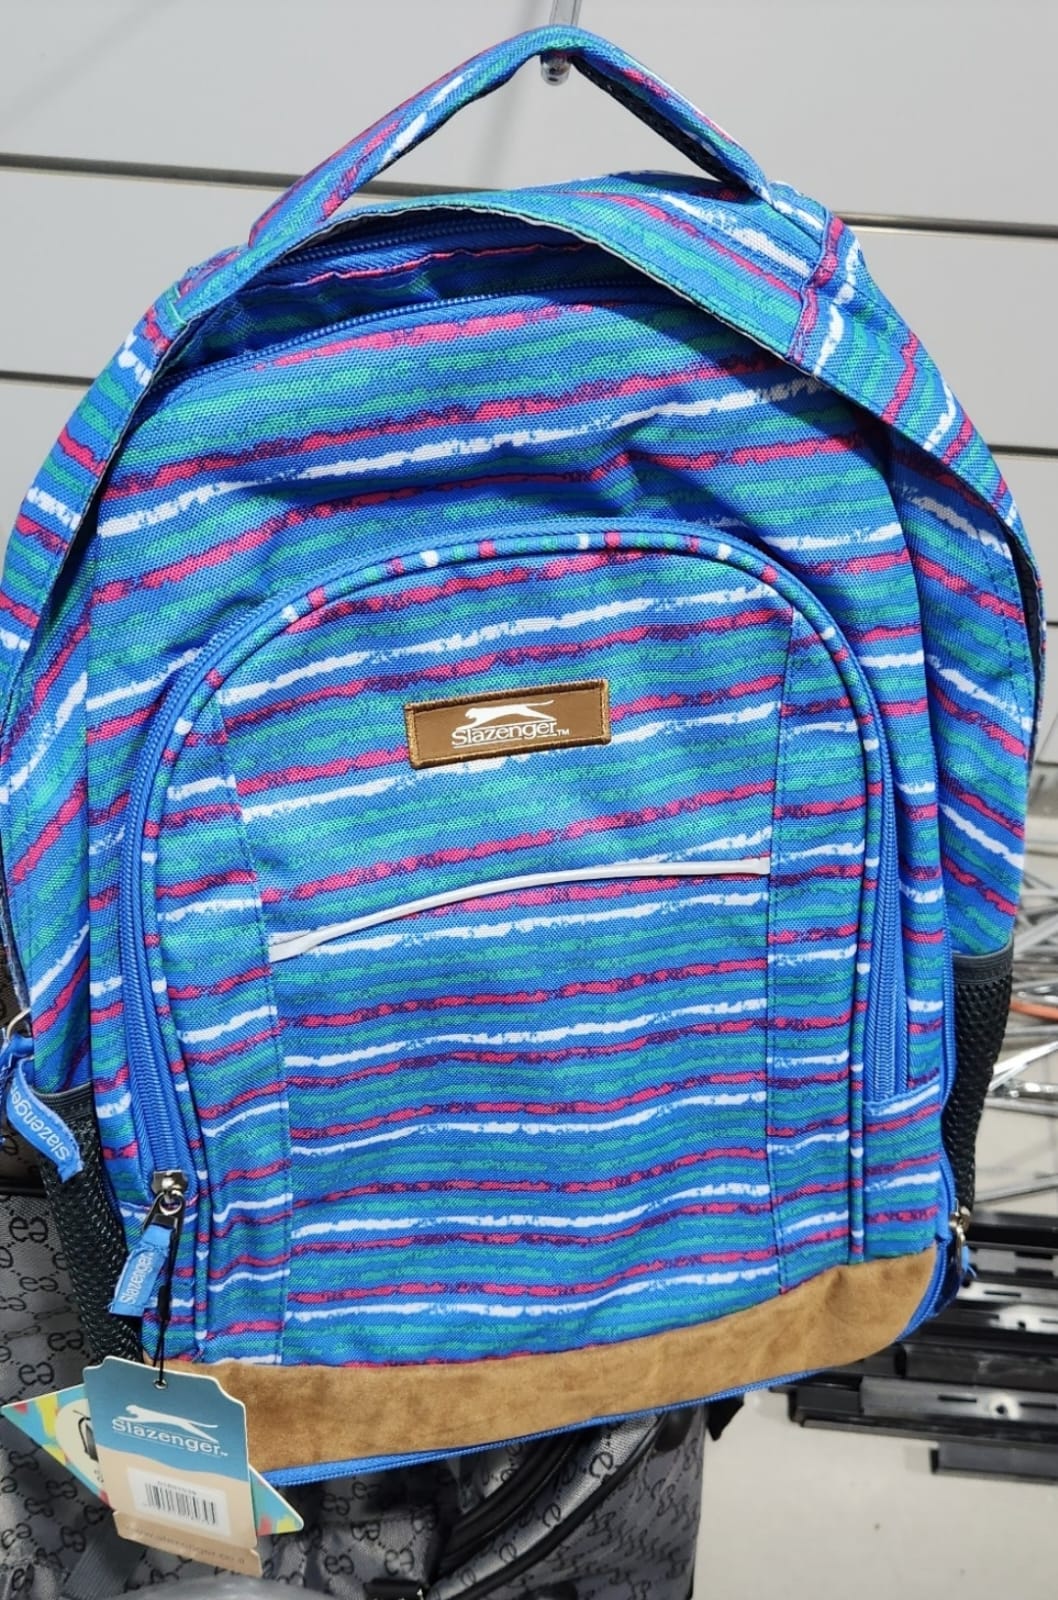 תיק גב מודפס איכותי ומתרחב לבית הספר במגוון צבעים SLAZENGER דגם School Backpack